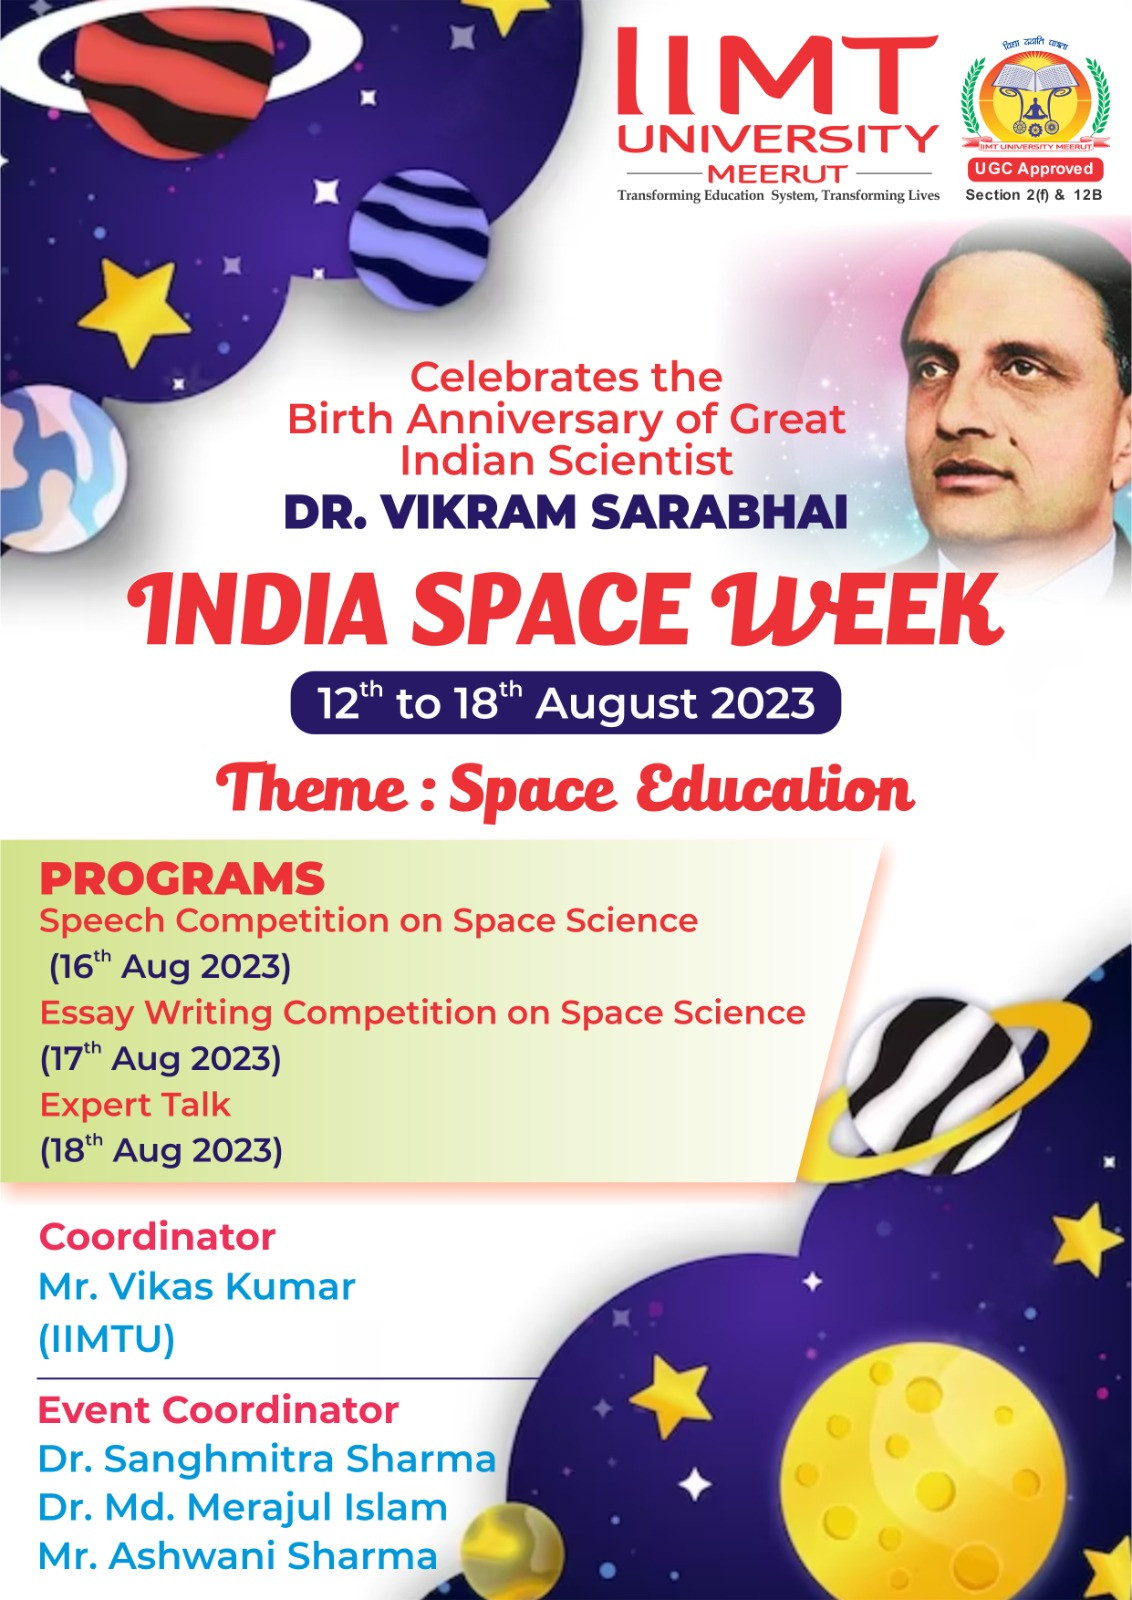 Celebration of Space Week 2023 at IIMT University, Meerut